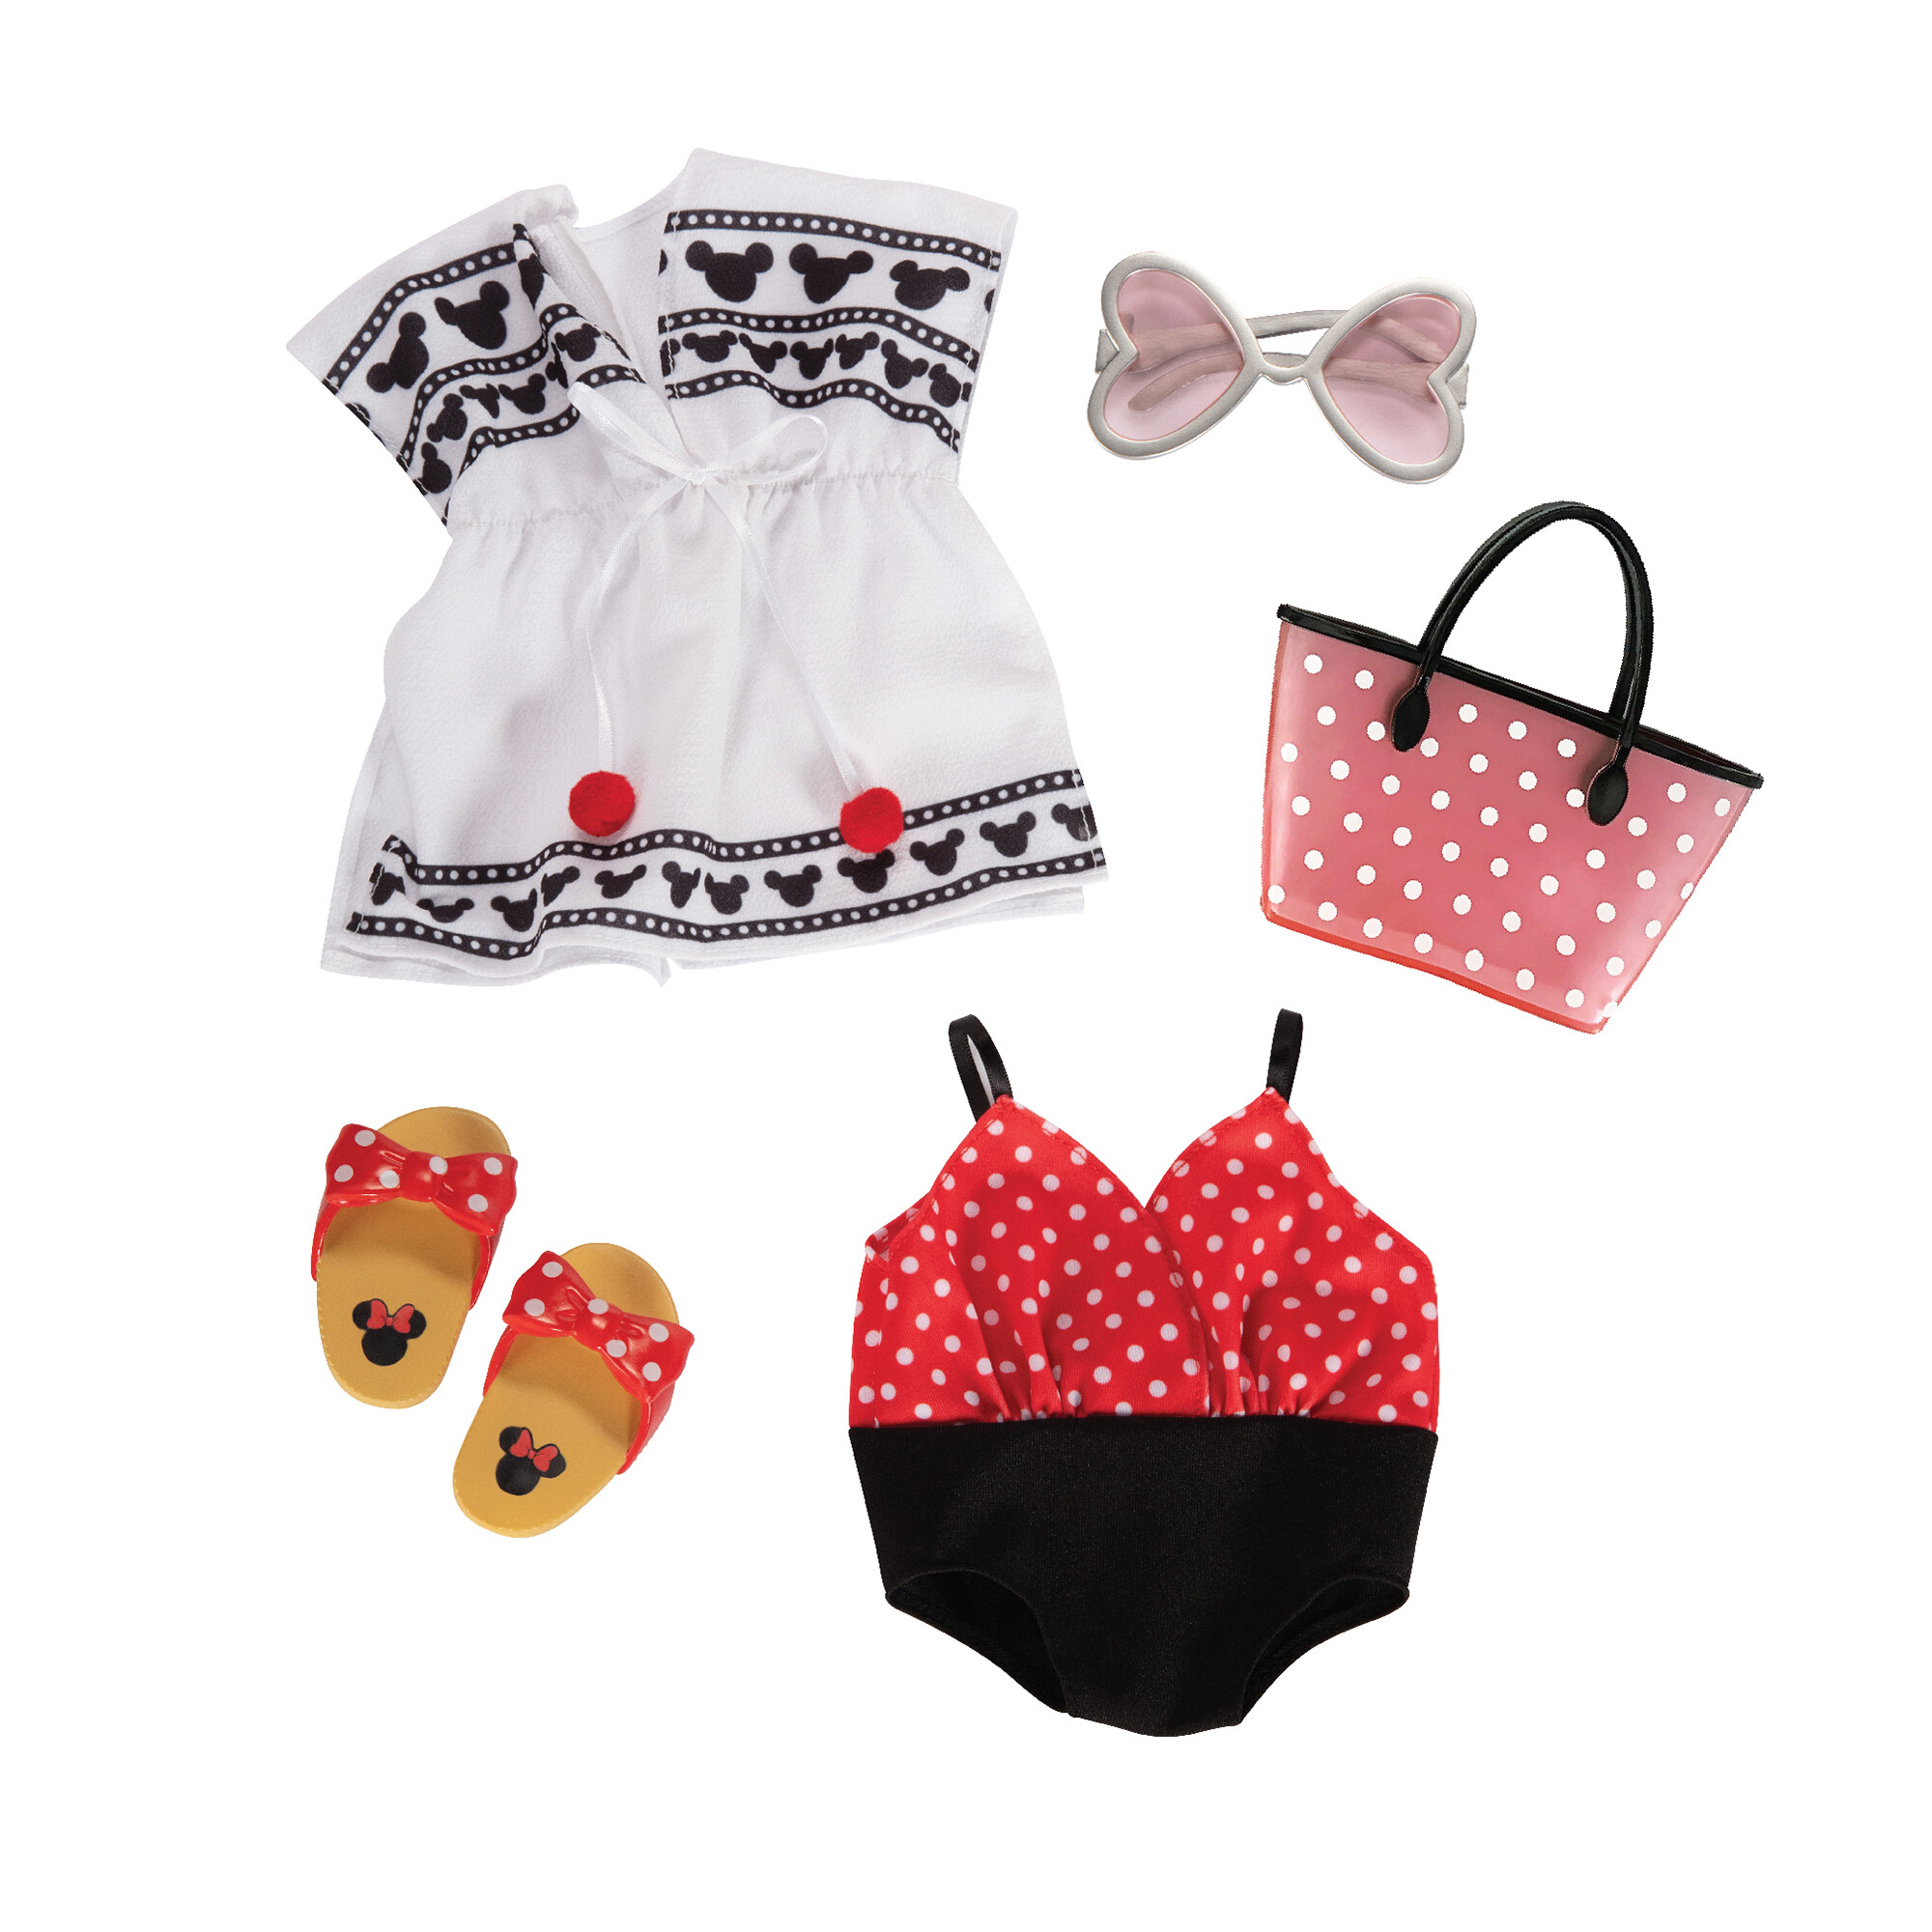 Disney ily 4ever accessory pack ispirato a minnie con abiti e accessori - Minnie